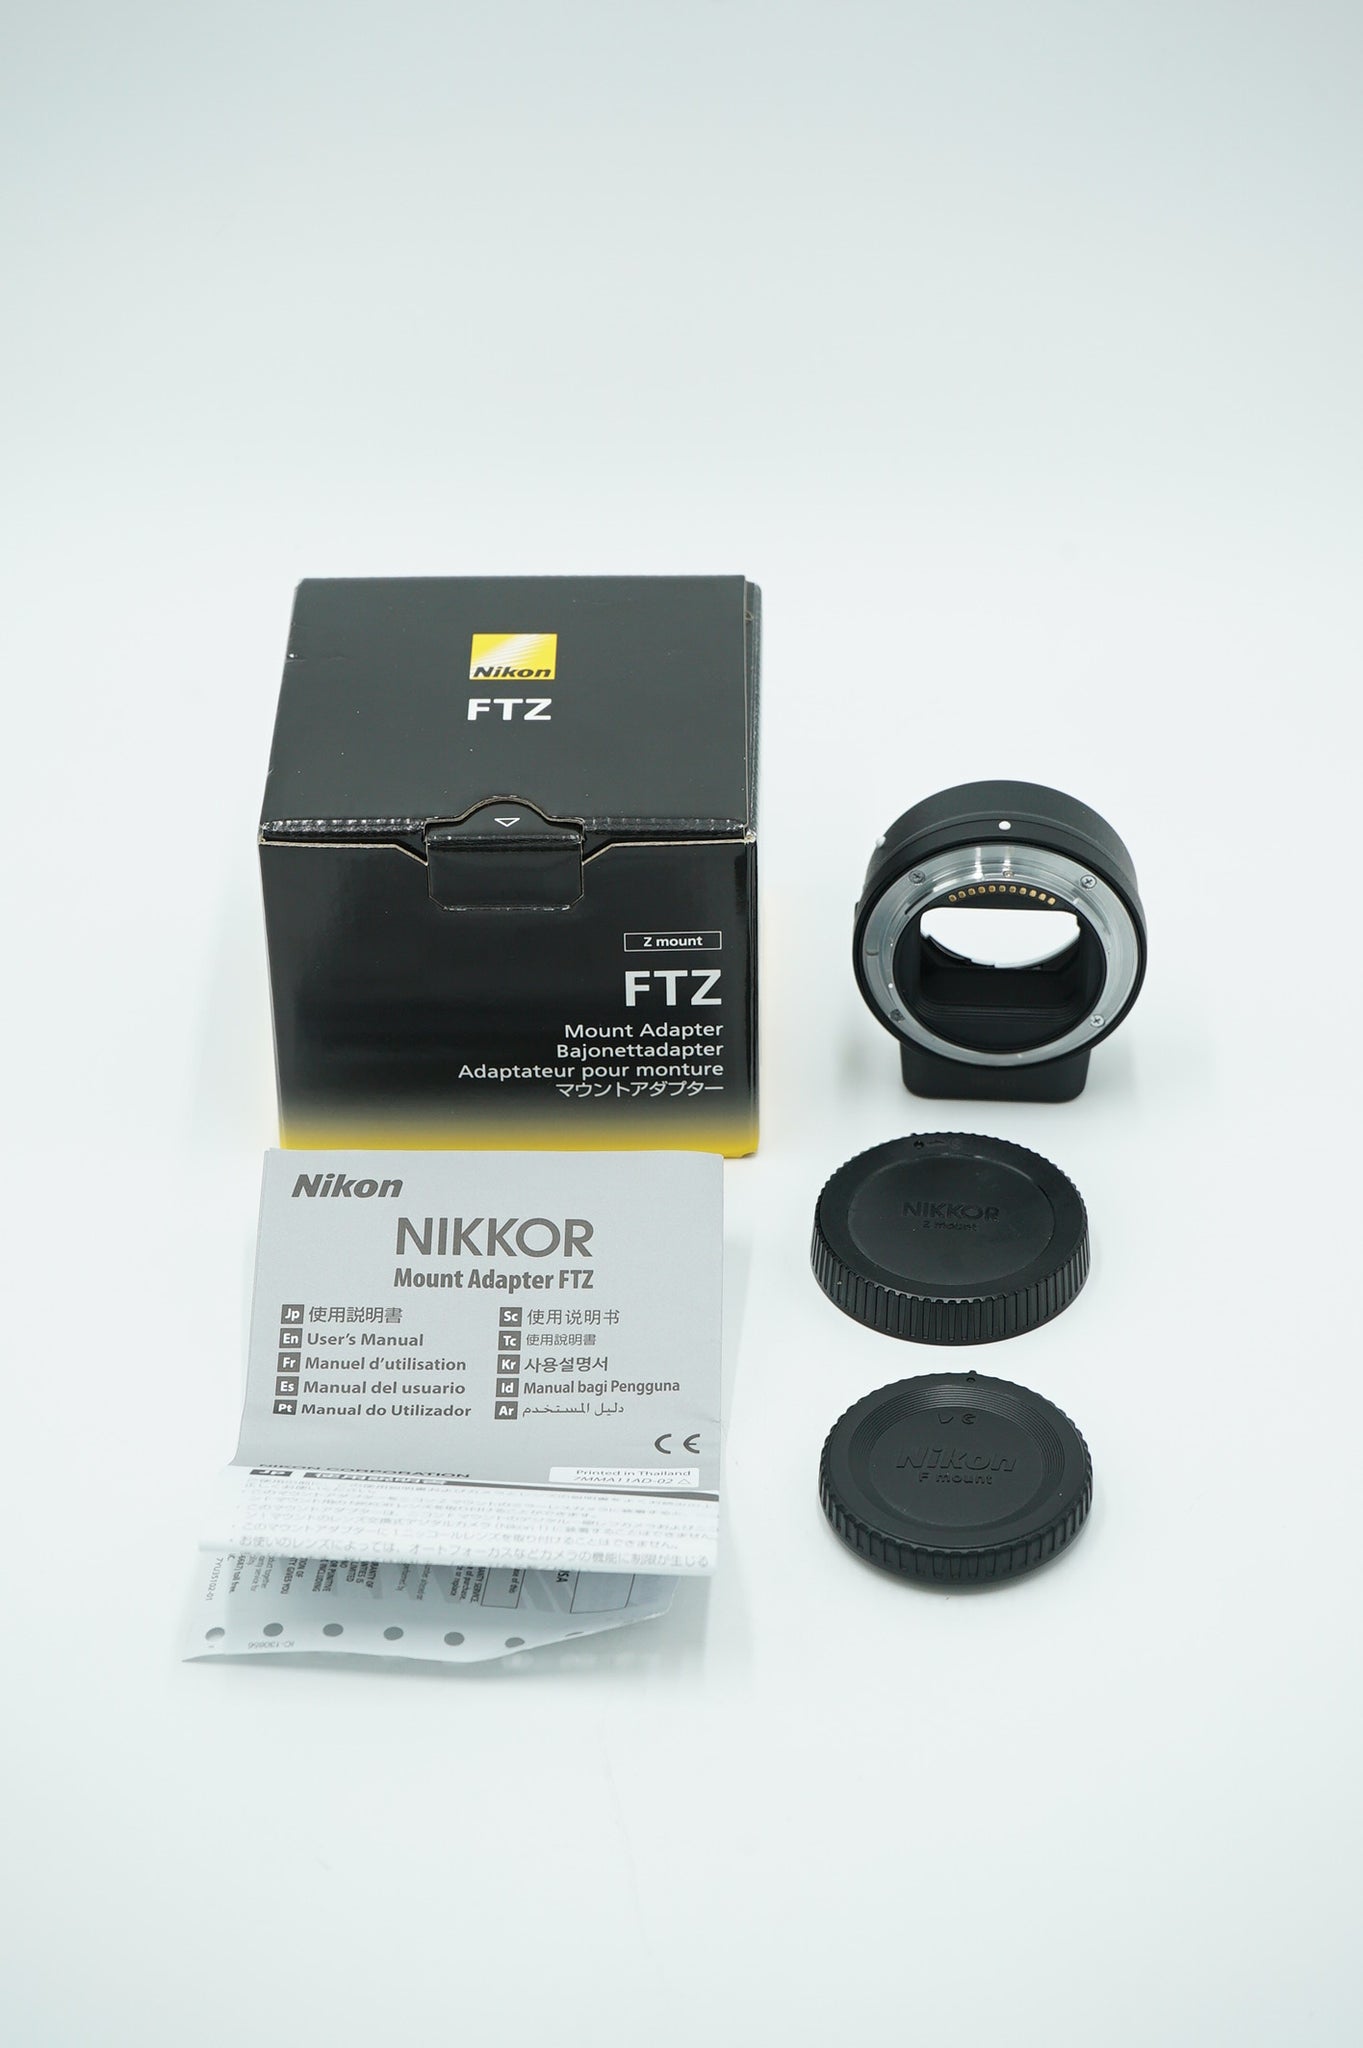 Nikon FTZ/84642 Mount Adapter, Nikon F To Nikon Z, Used